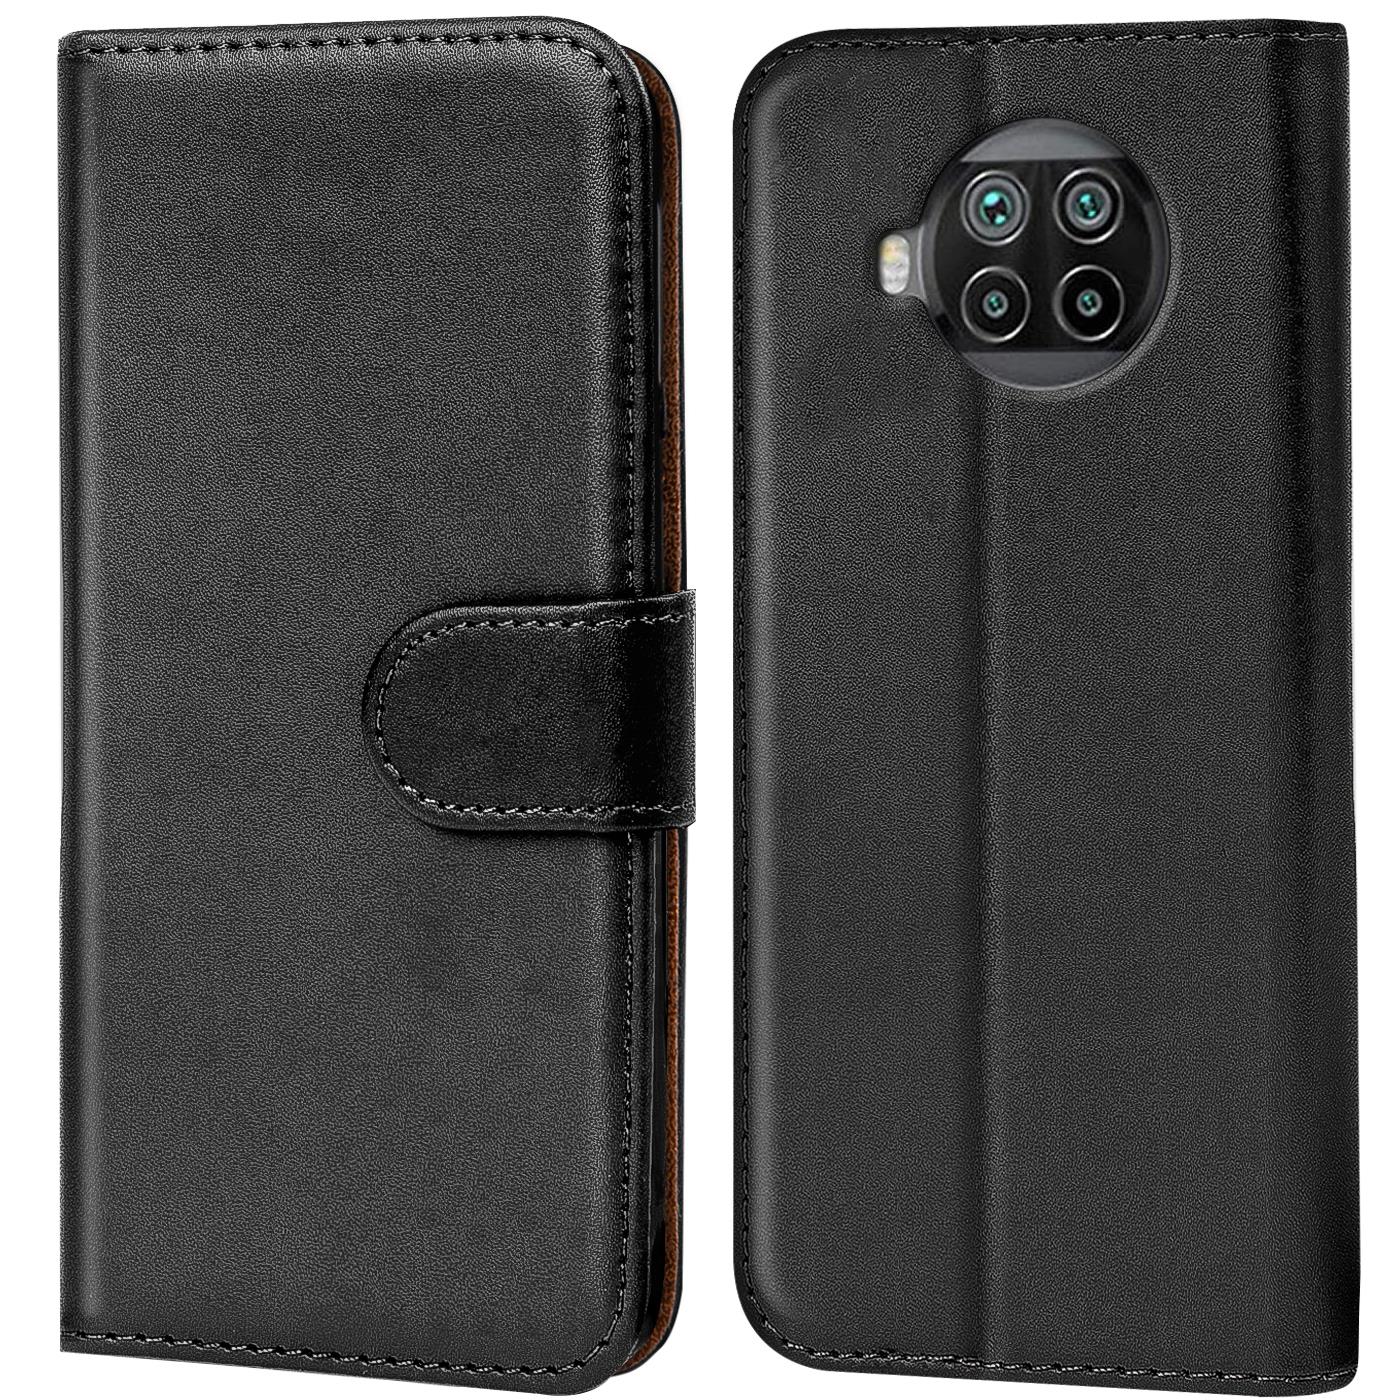 Indexbild 11 - Schutz Hülle Für Xiaomi Mi Handy Tasche Flip Case Cover Wallet Book Hülle Etui